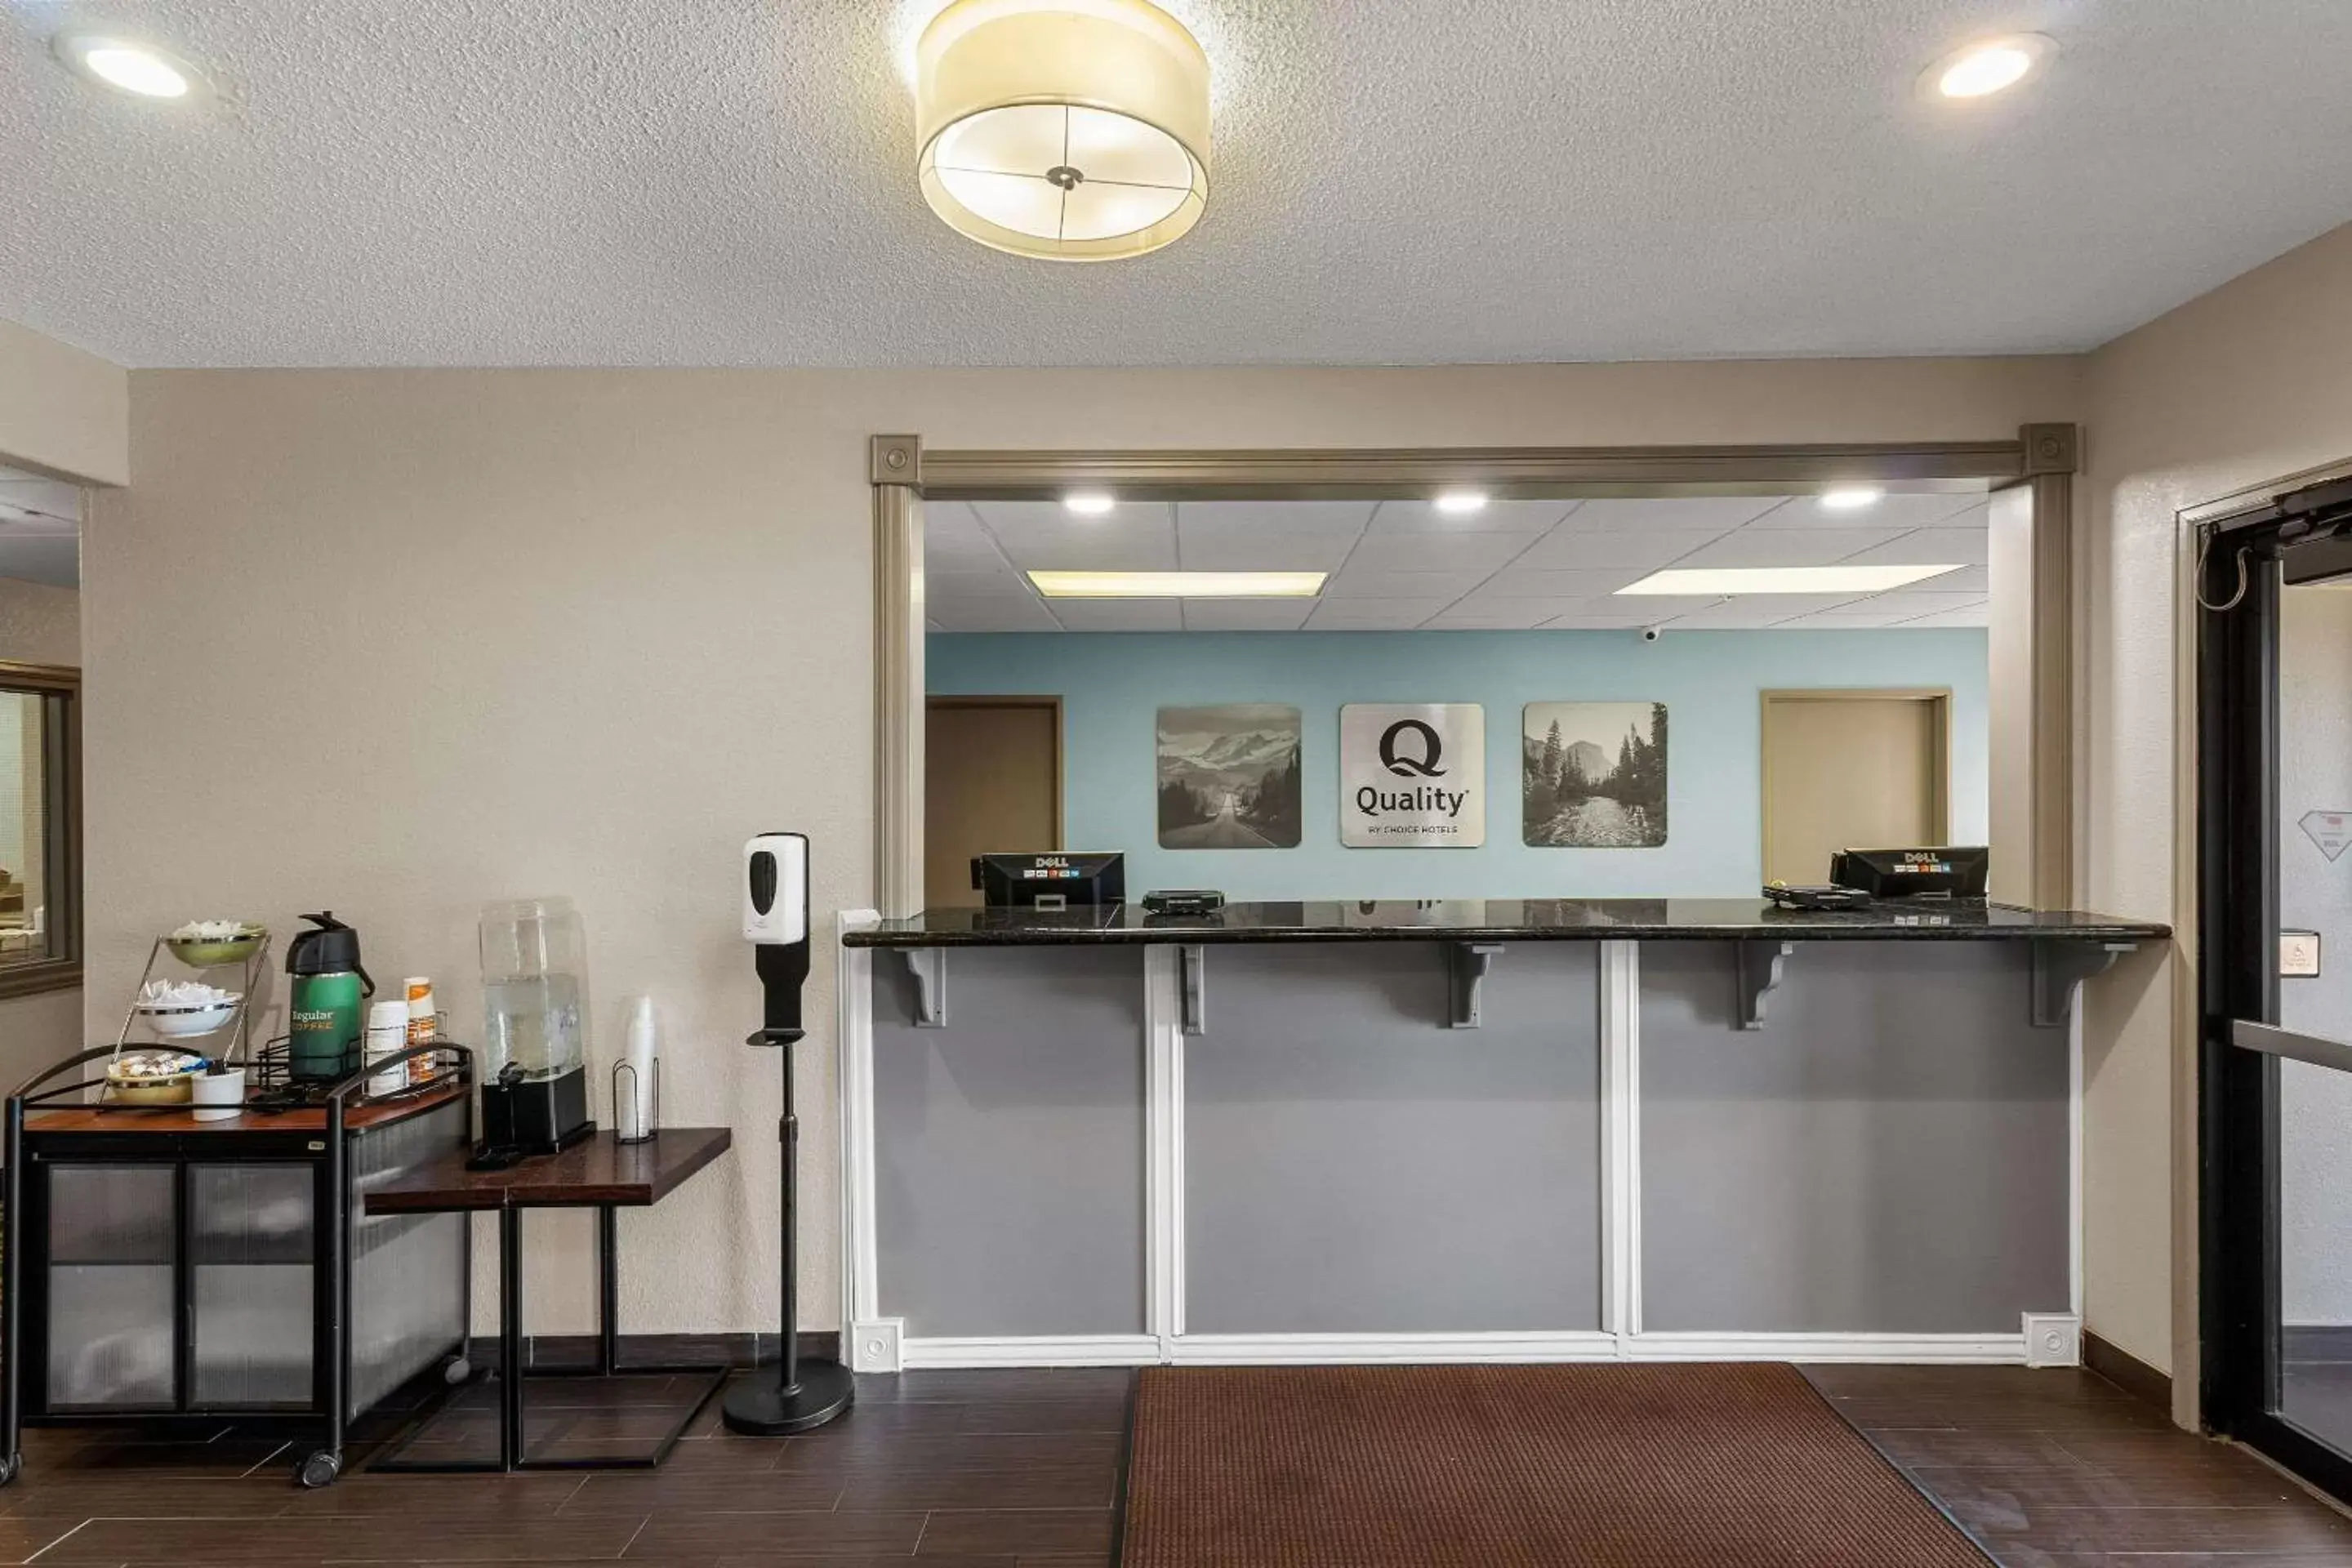 Lobby or reception in Quality Inn Brighton